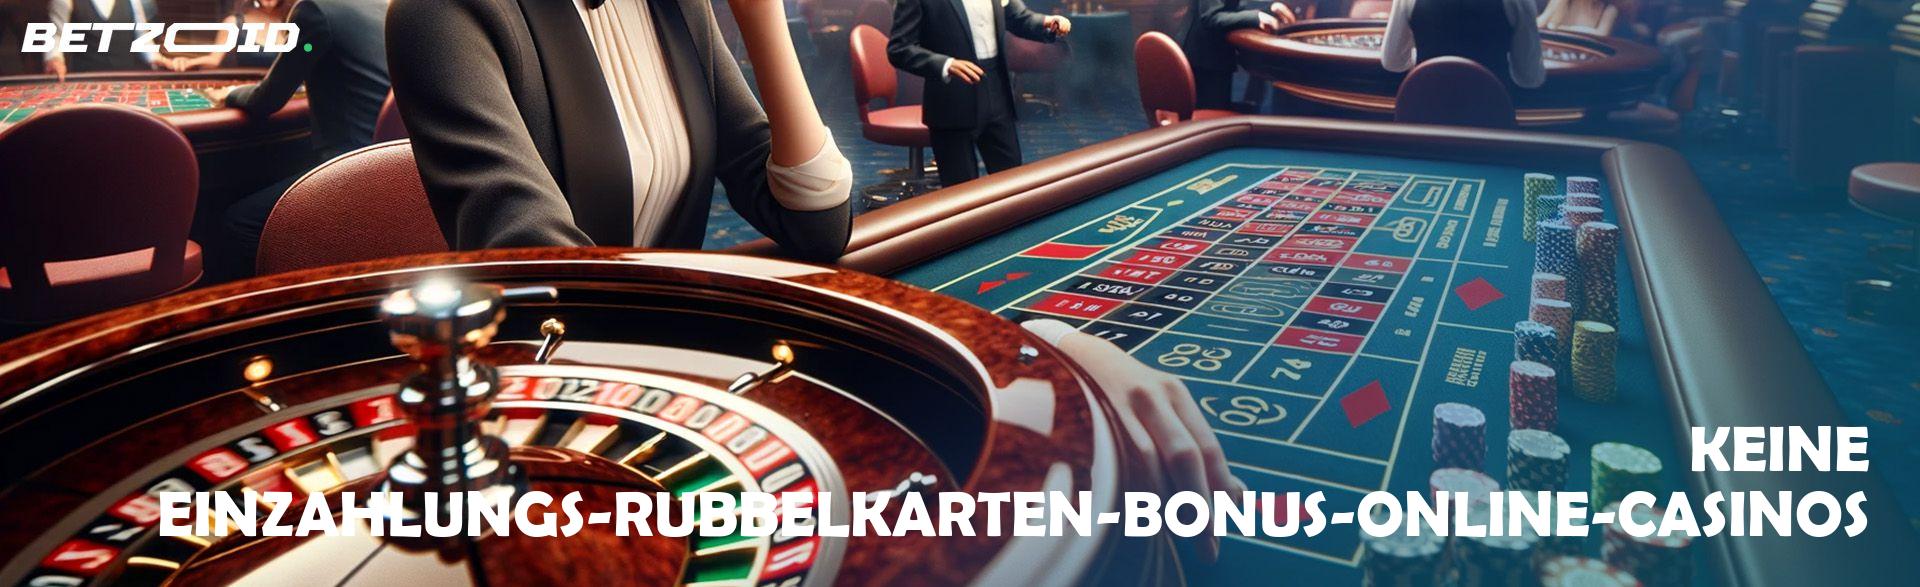 Keine Einzahlungs-Rubbelkarten-Bonus-Online-Casinos.